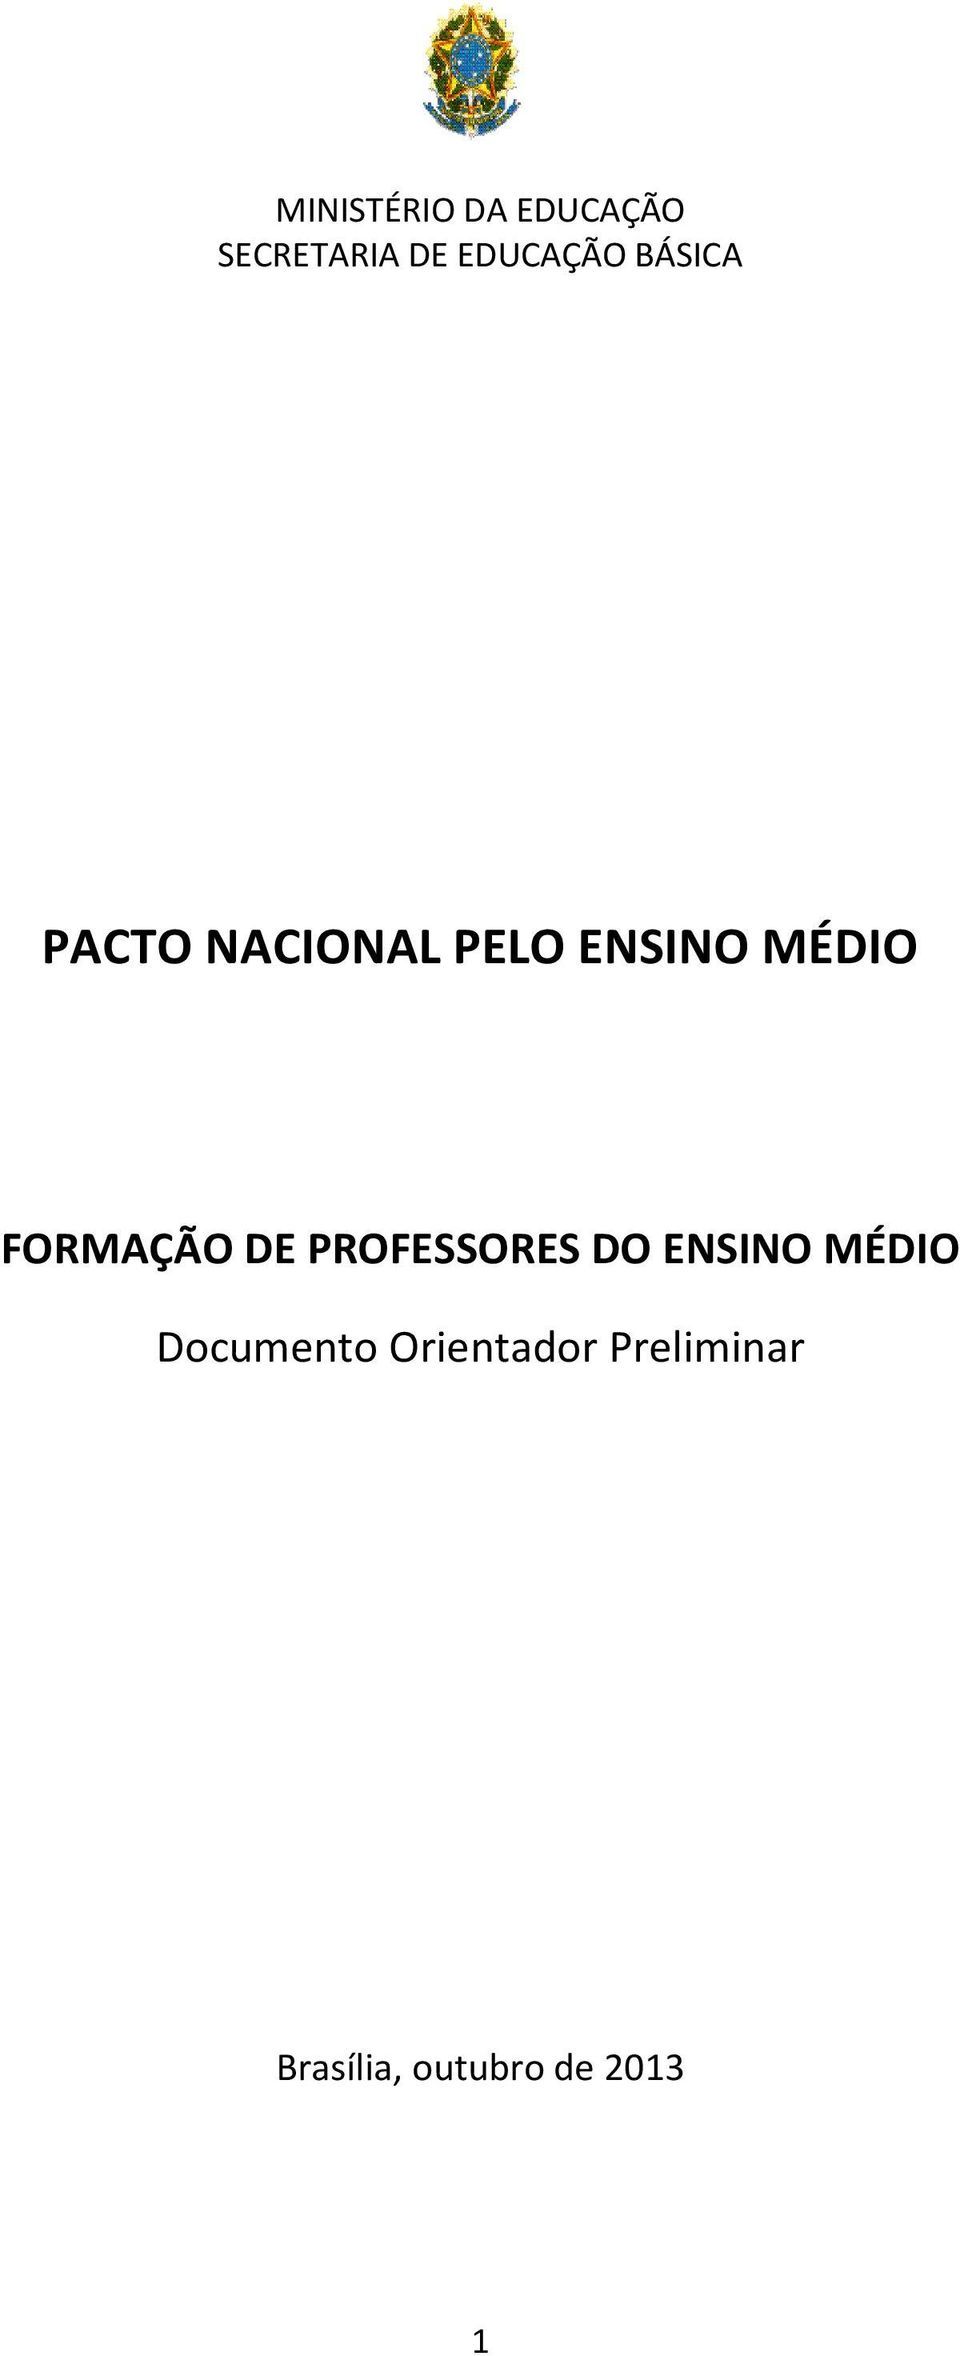 FORMAÇÃO DE PROFESSORES DO ENSINO MÉDIO